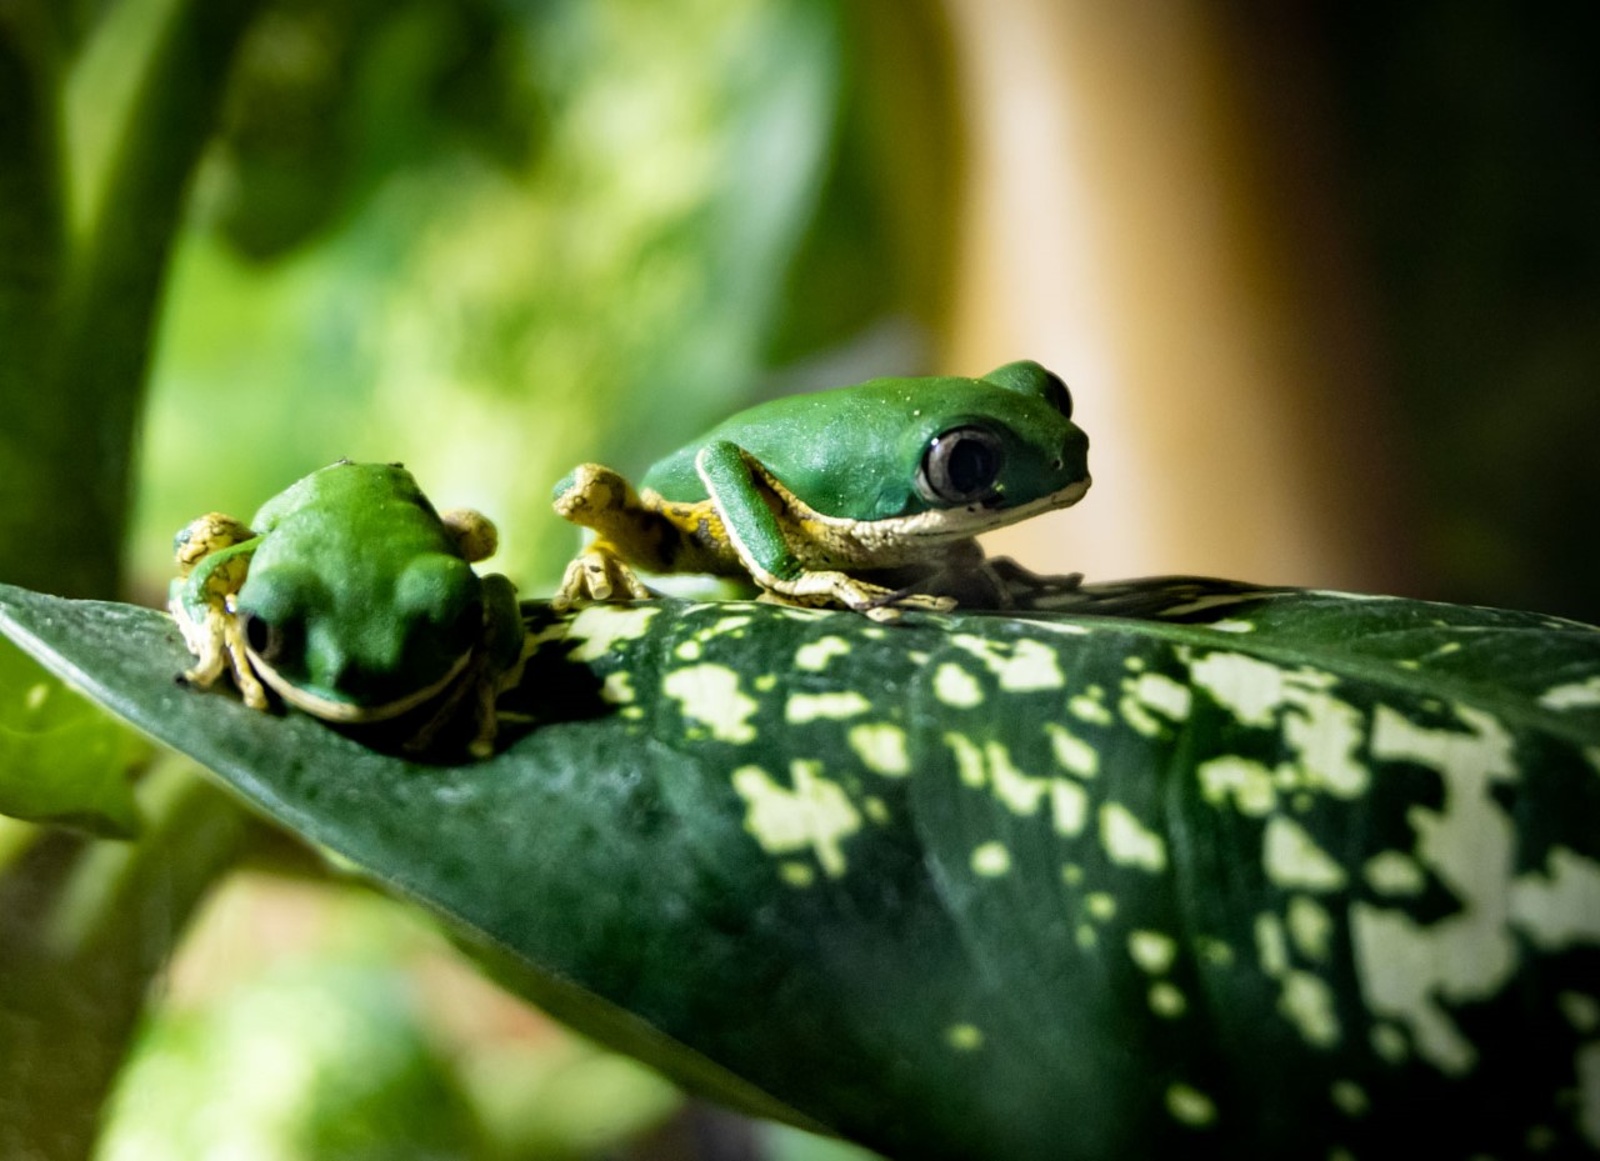 FOTO: Liberecká zoo začala s chovem vzácných žabek, jako jediná v Čechách -  Liberecký deník